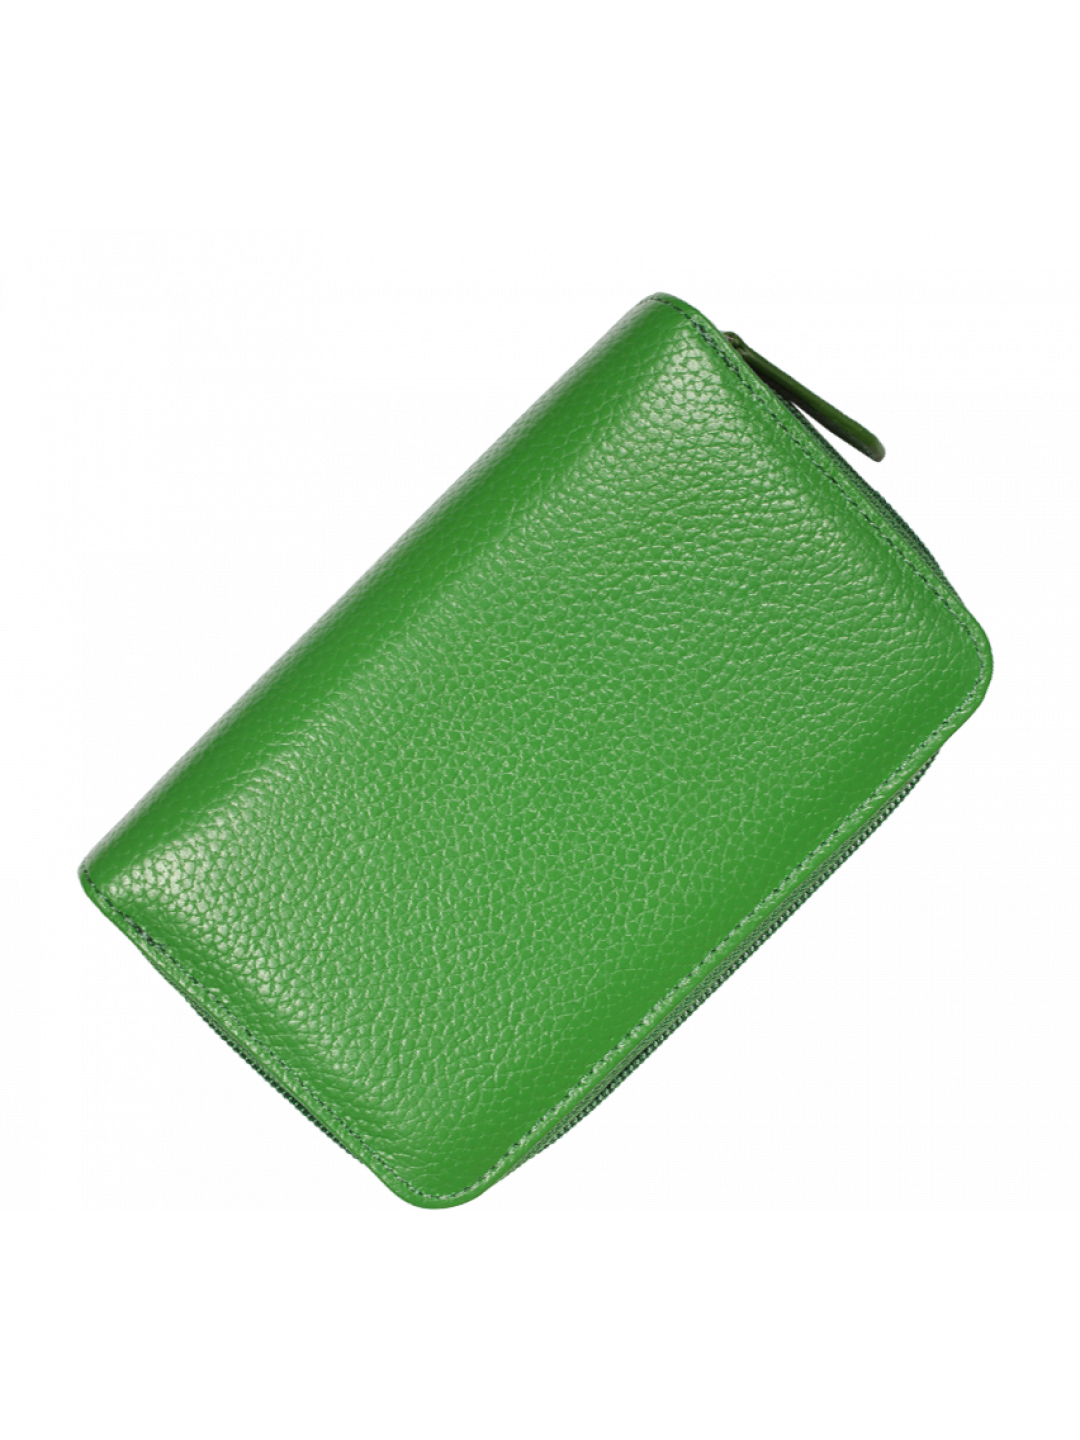 Kožená peněženka WB009 Verde Scura